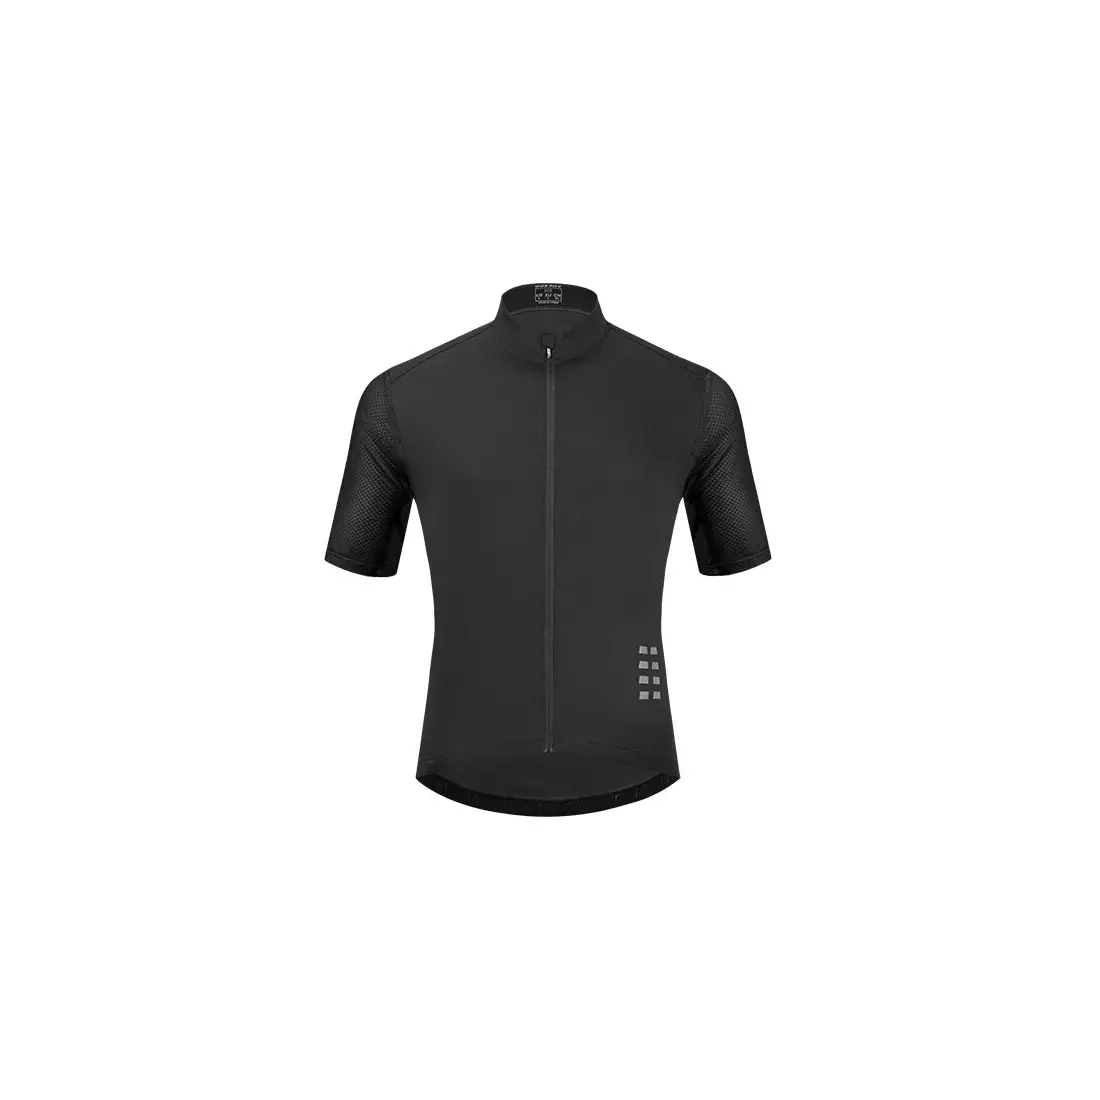 WOSAWE BL247-B pánsky cyklistický dres s krátkym rukávom, čierny